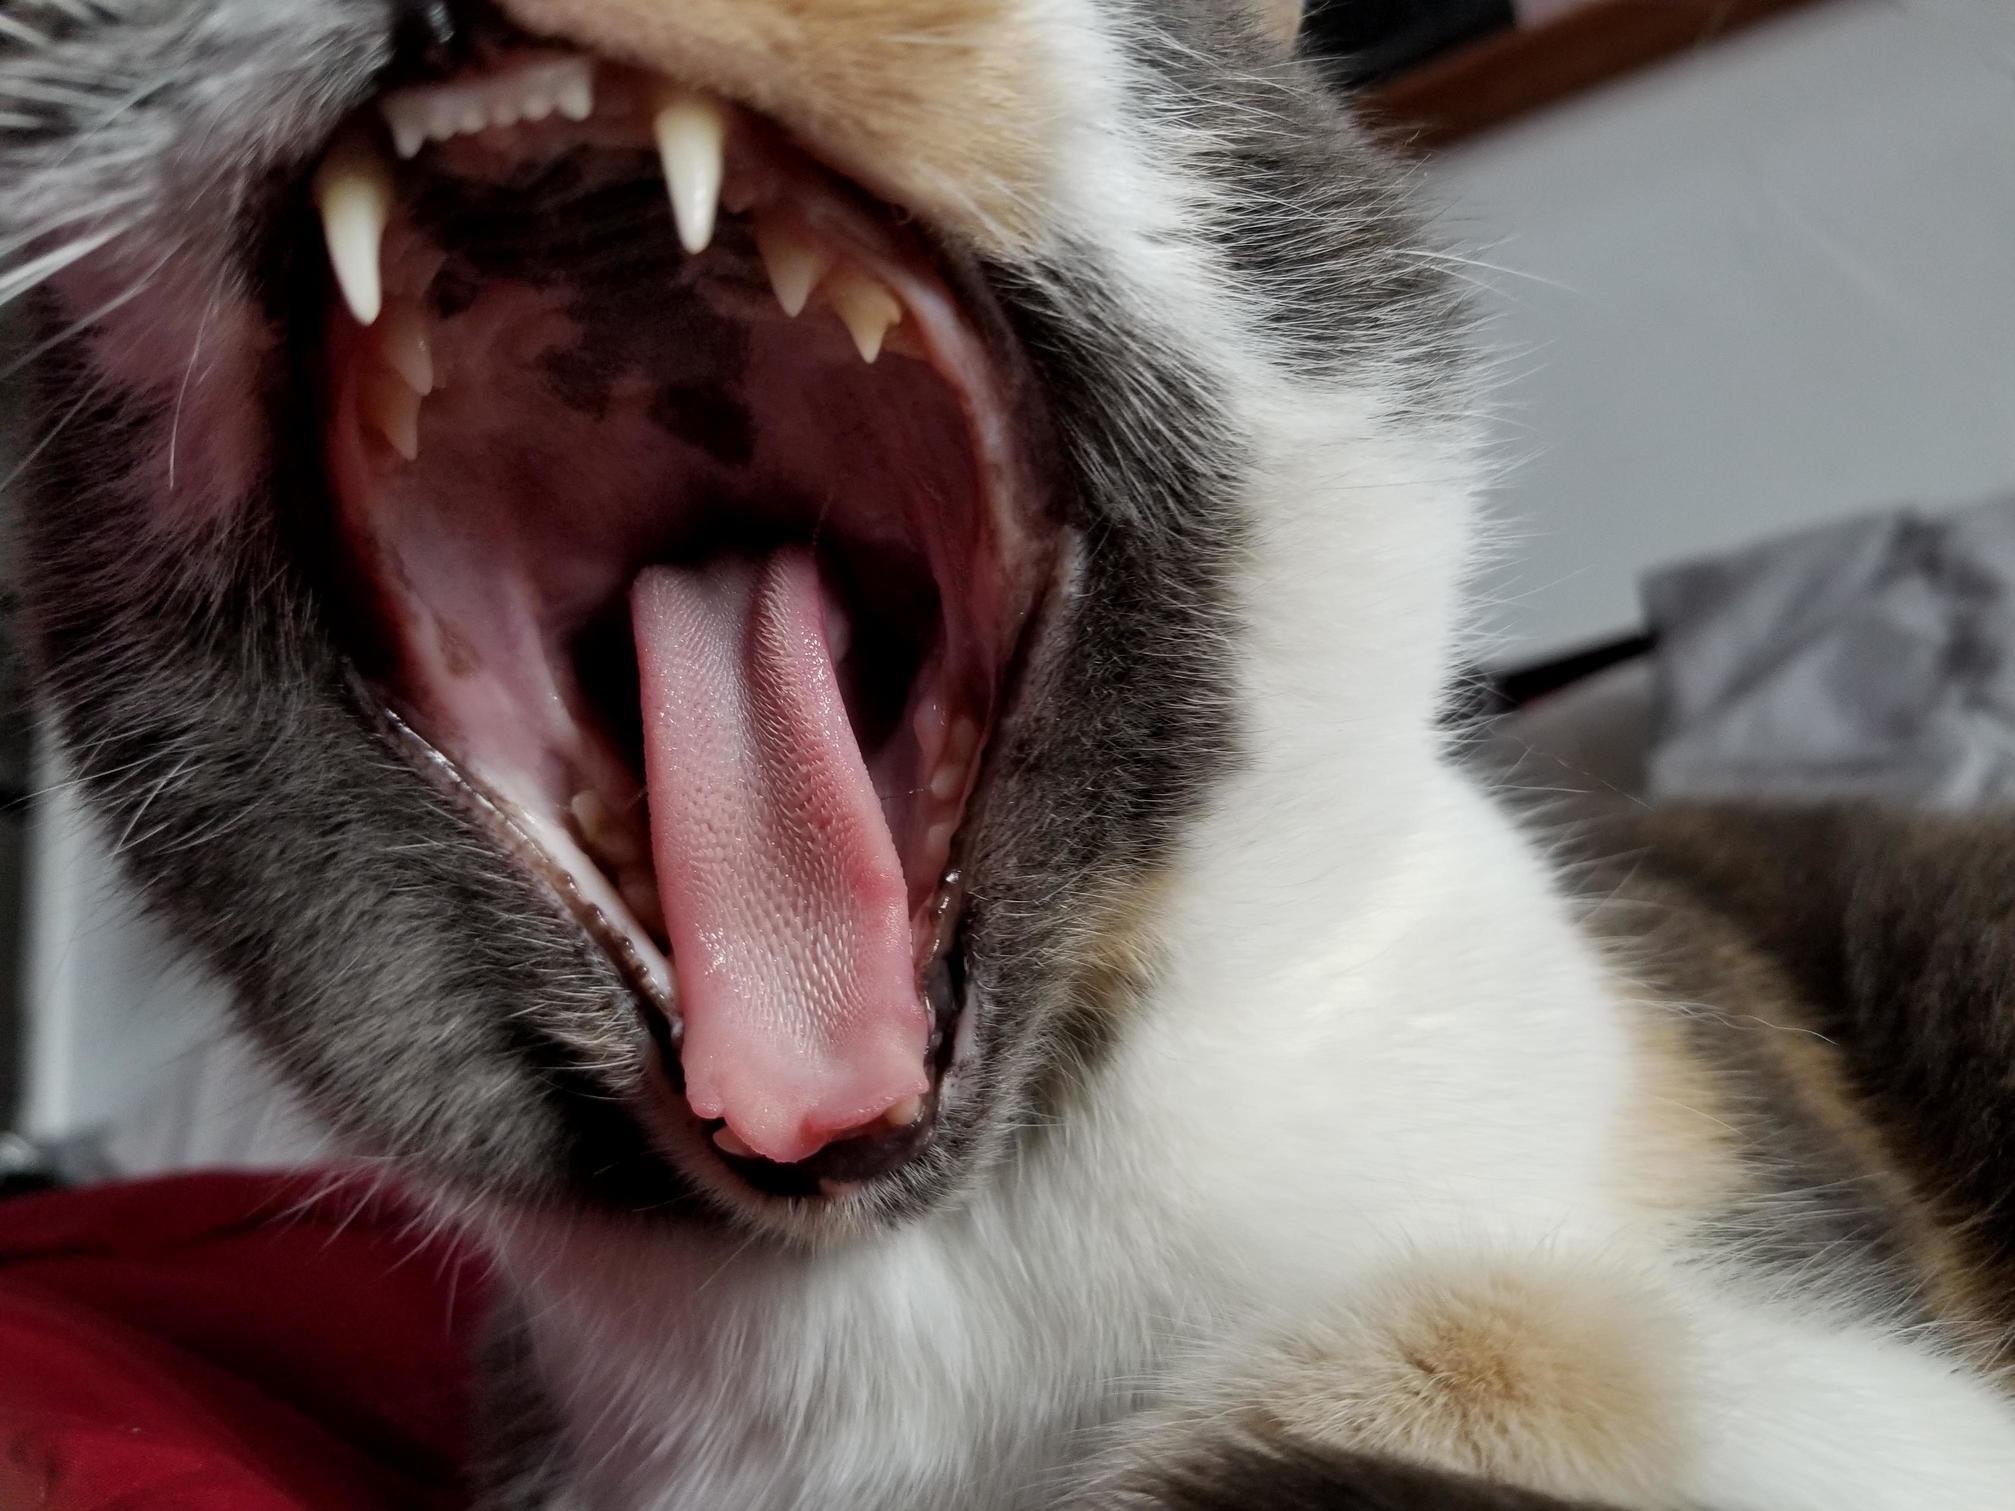 Big kitty yawn